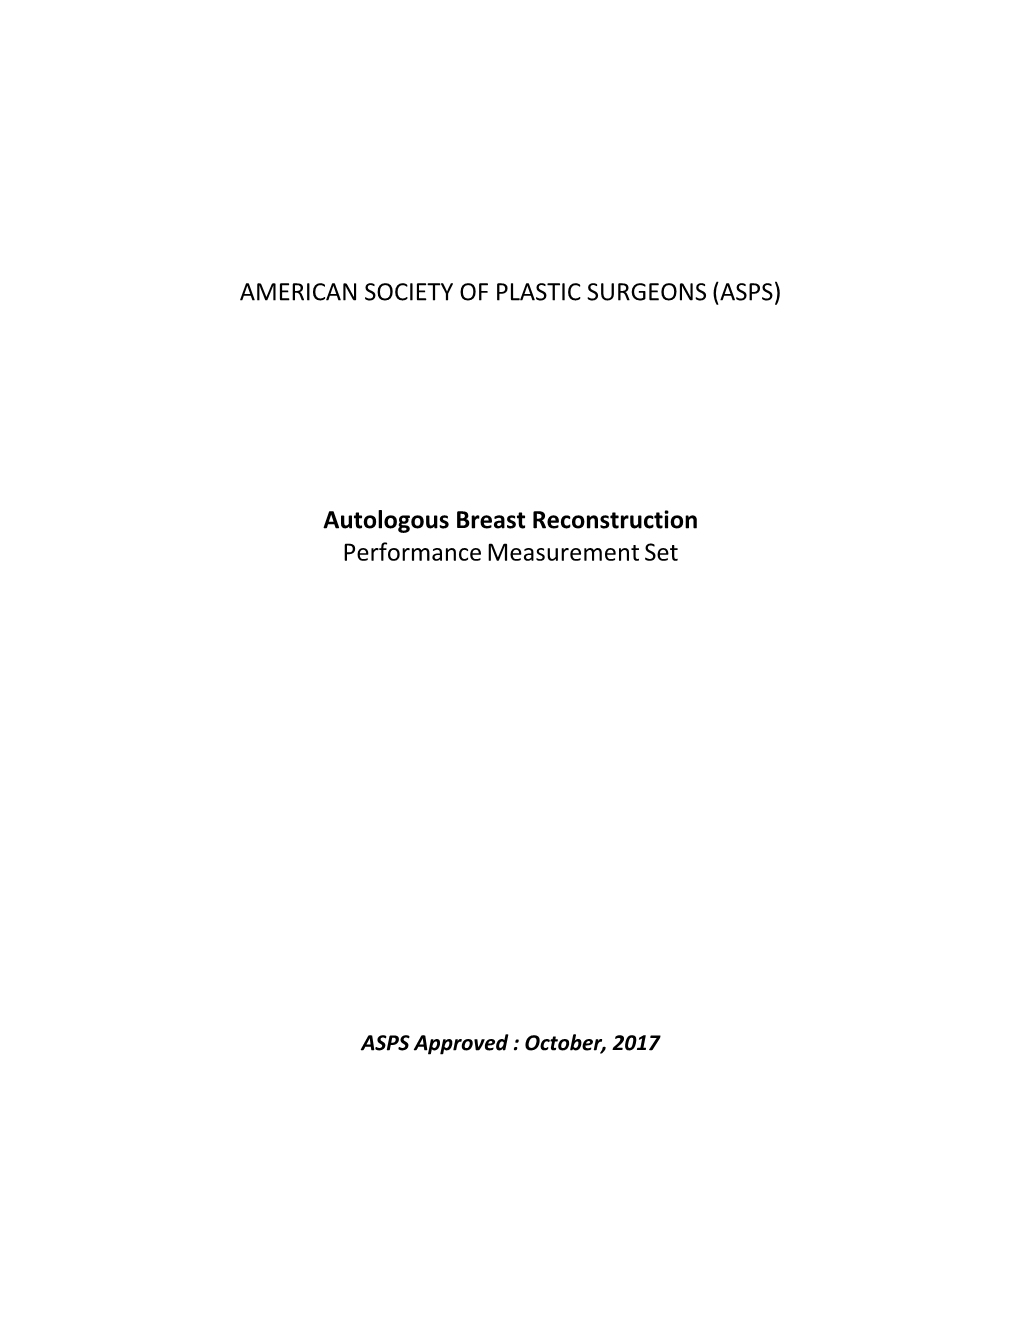 Autologous Breast Reconstruction Performance Measurement Set